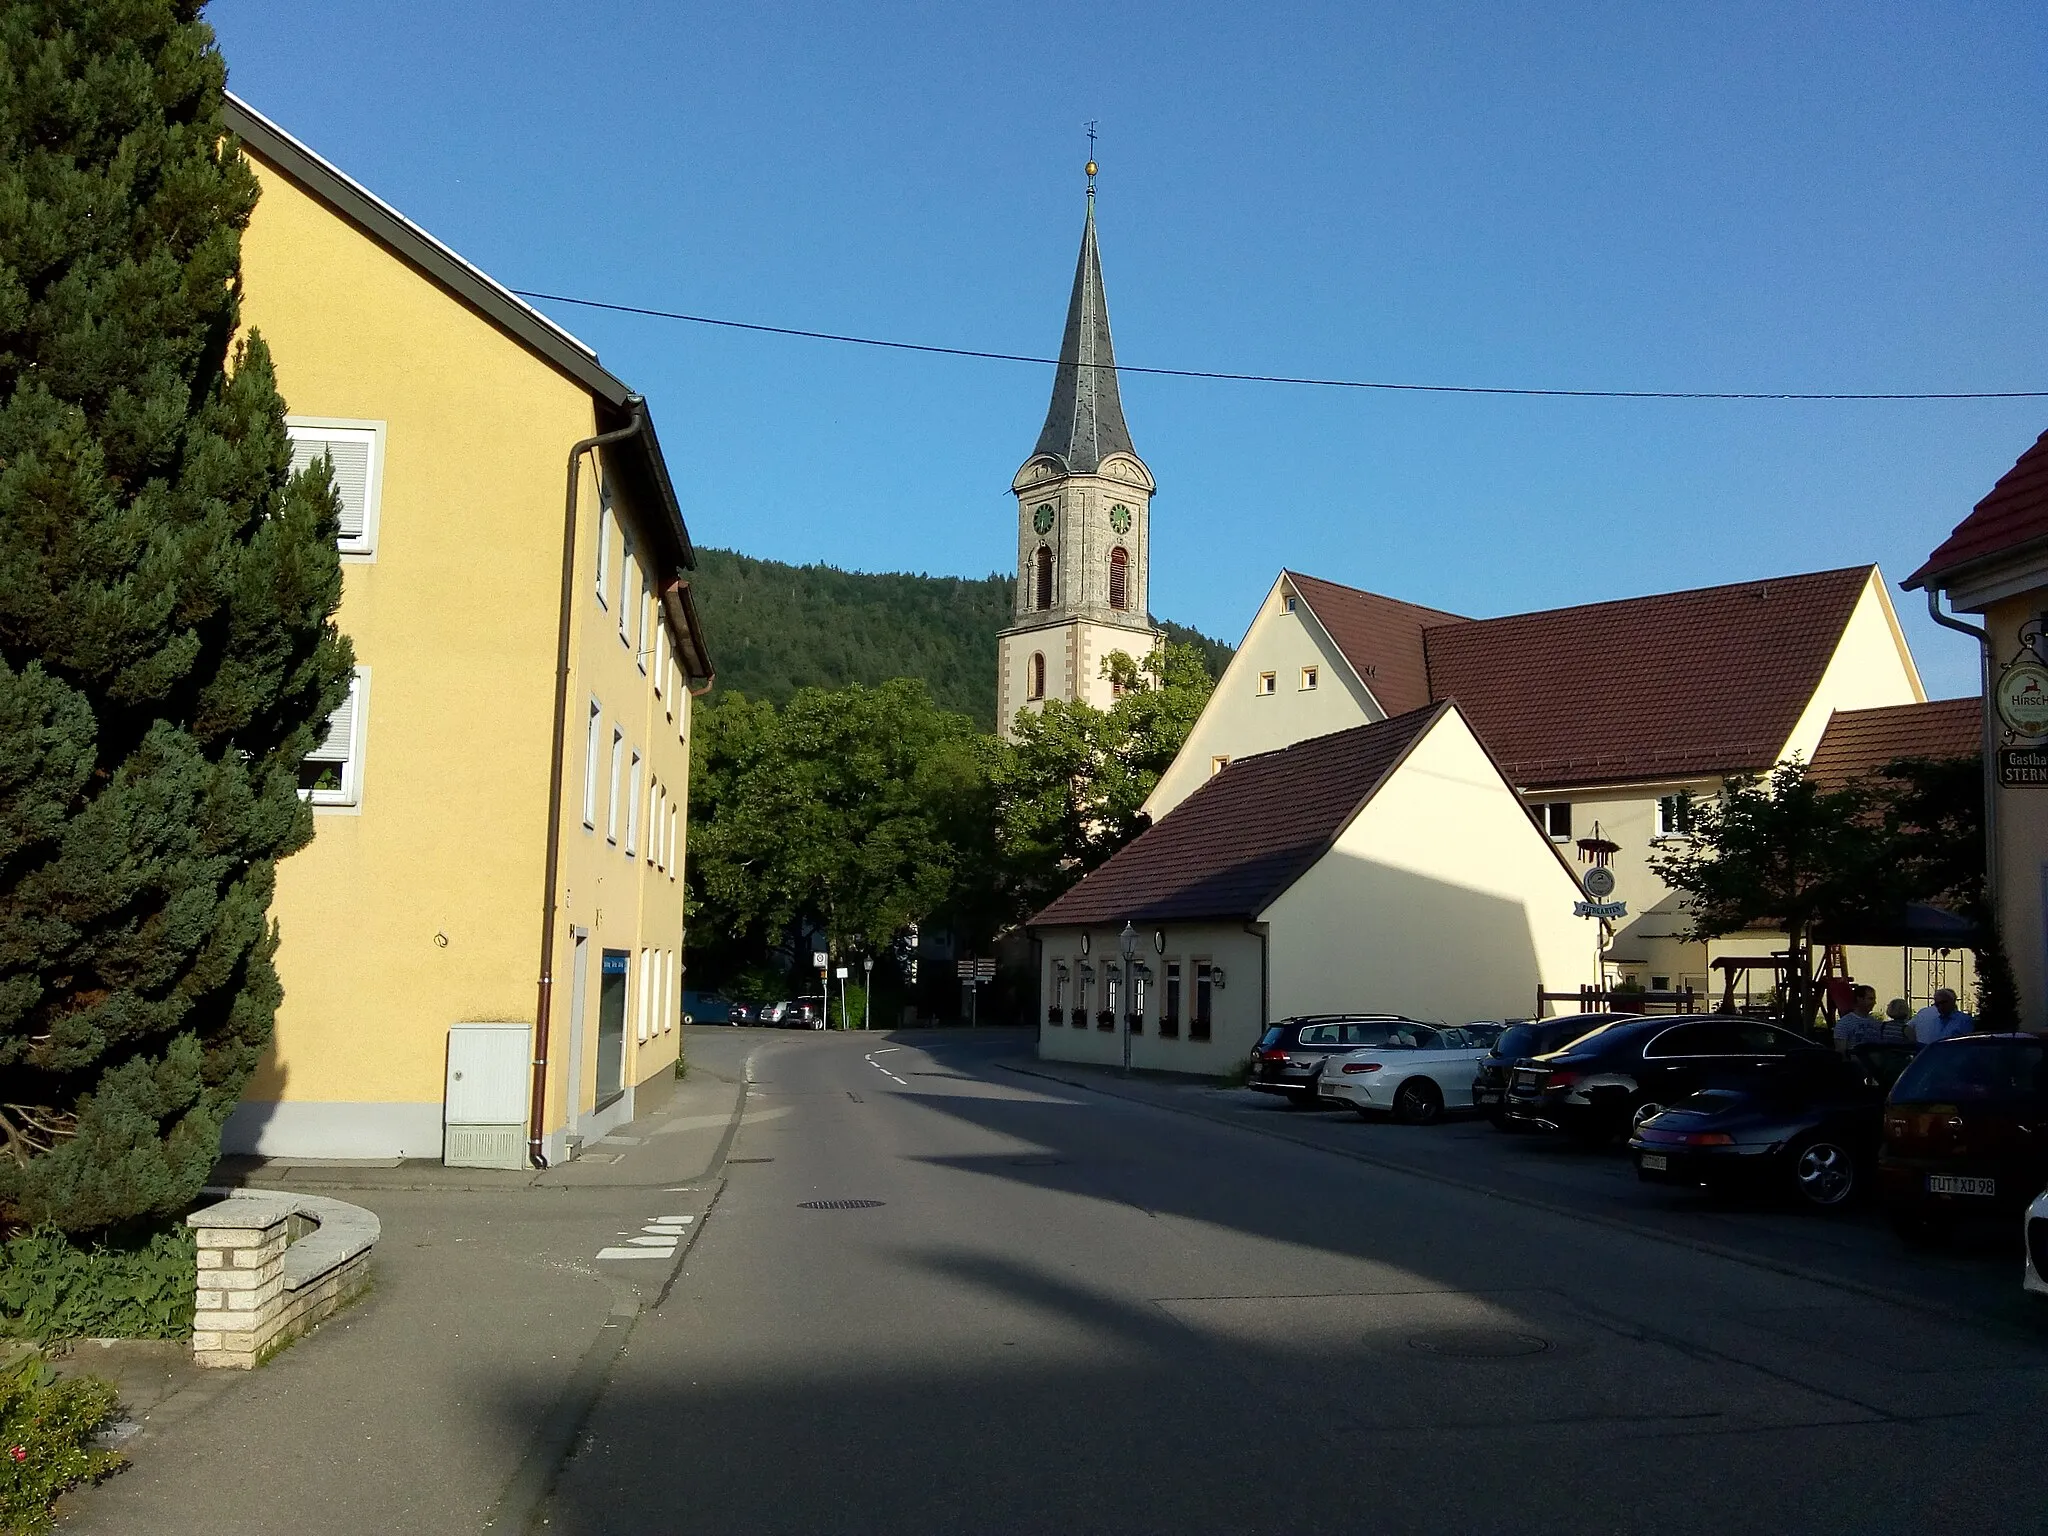 Image of Wurmlingen